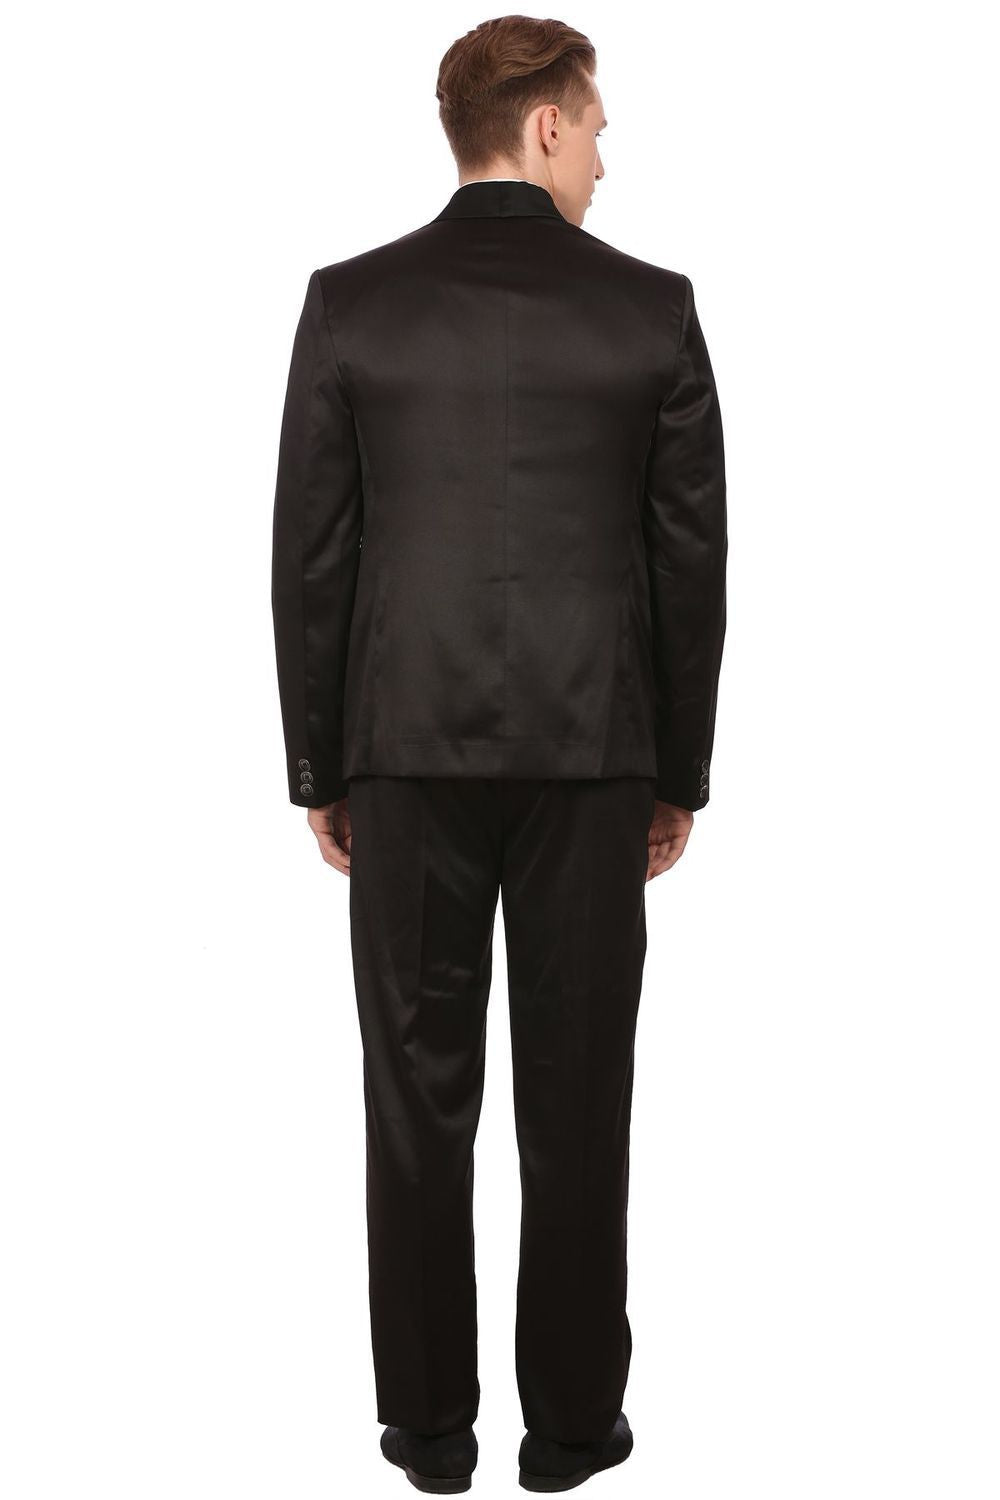 Poly Blend Black Tuxedo Suit